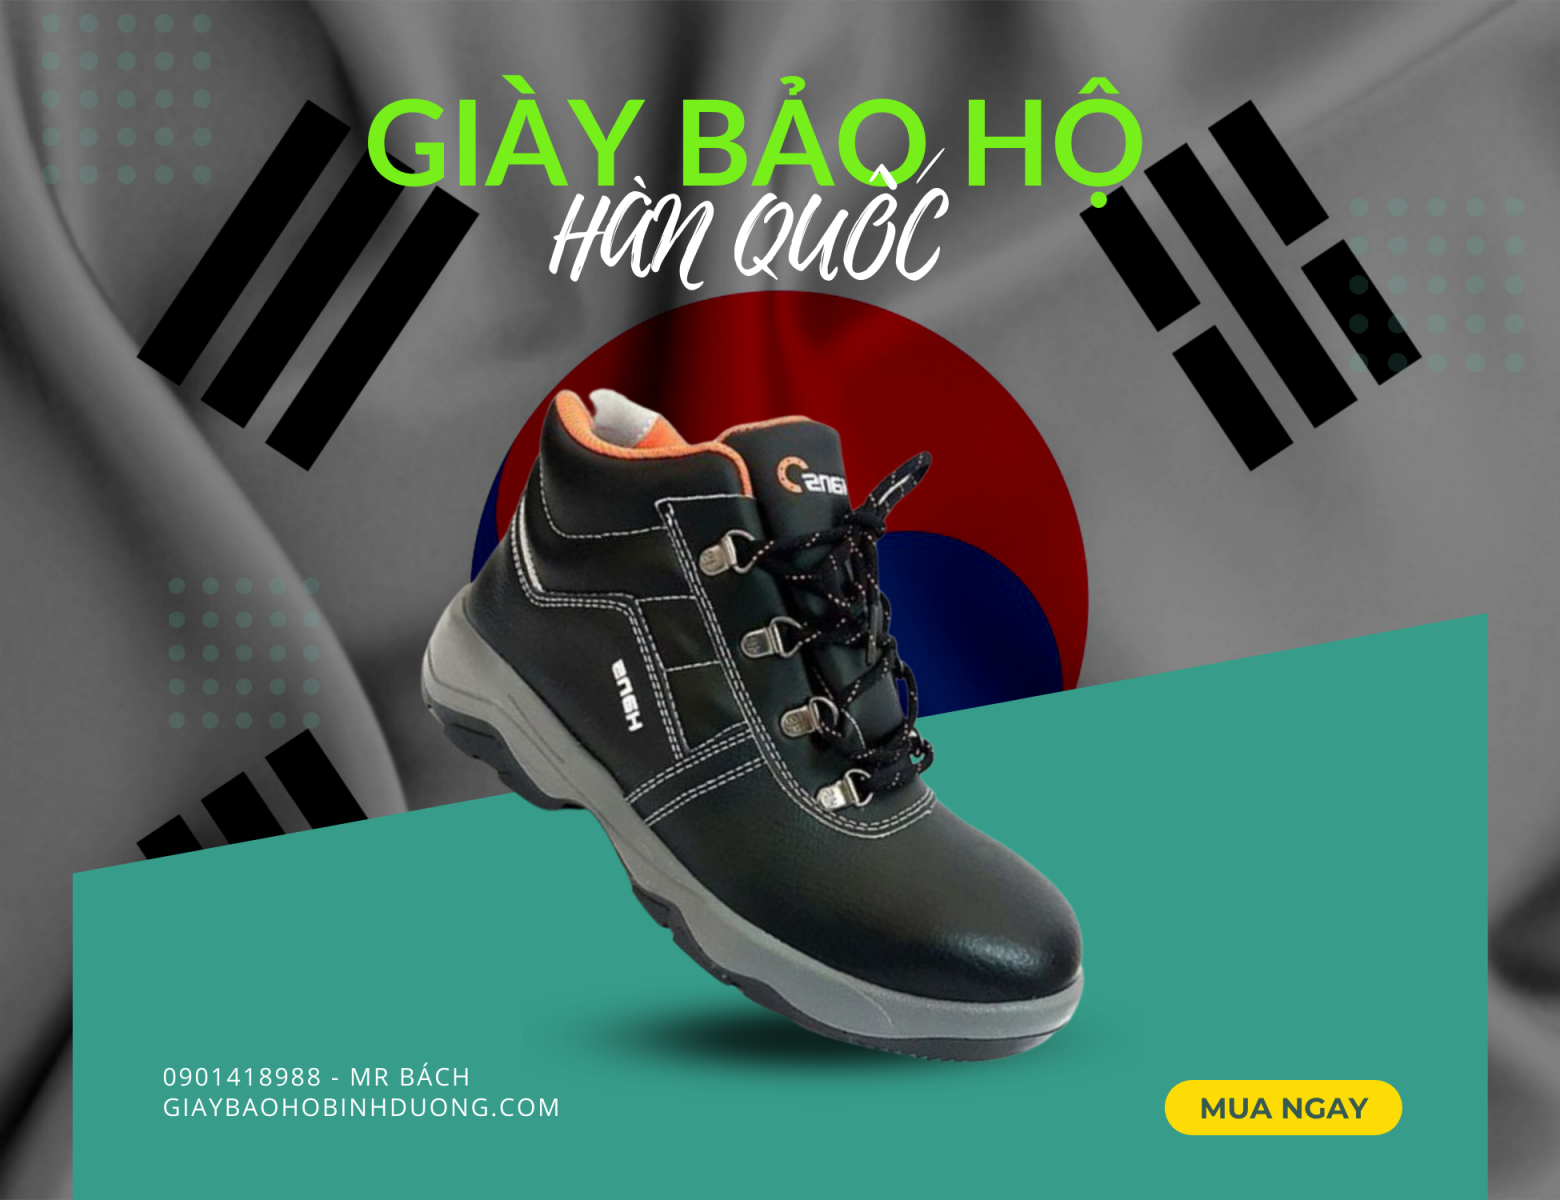 Giày bảo hộ siêu nhẹ Hàn Quốc